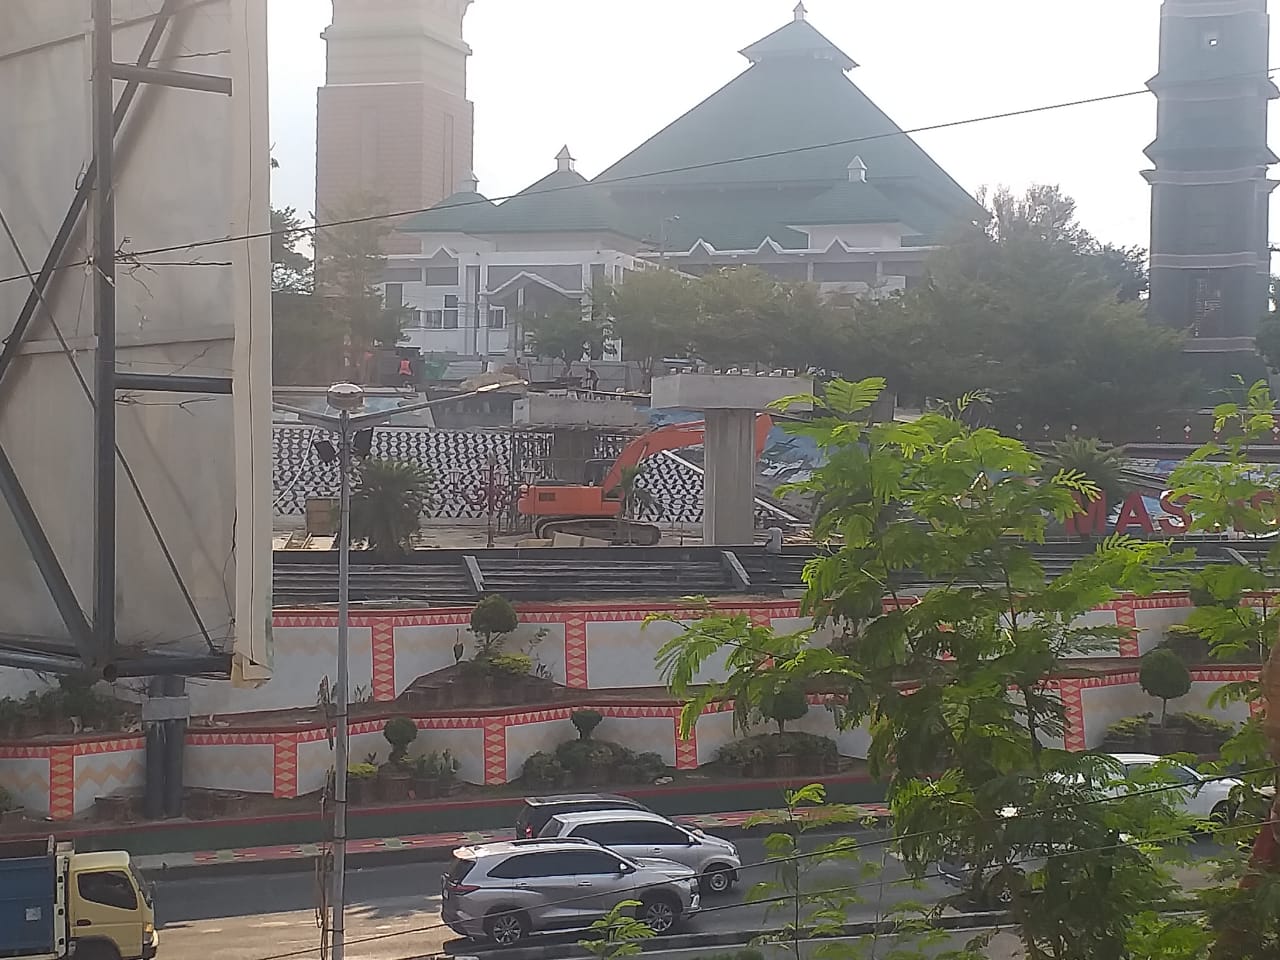 Update JPO, Alat Berat Kini Sudah 'Menghiasi' Halaman Masjid Al-Furqon